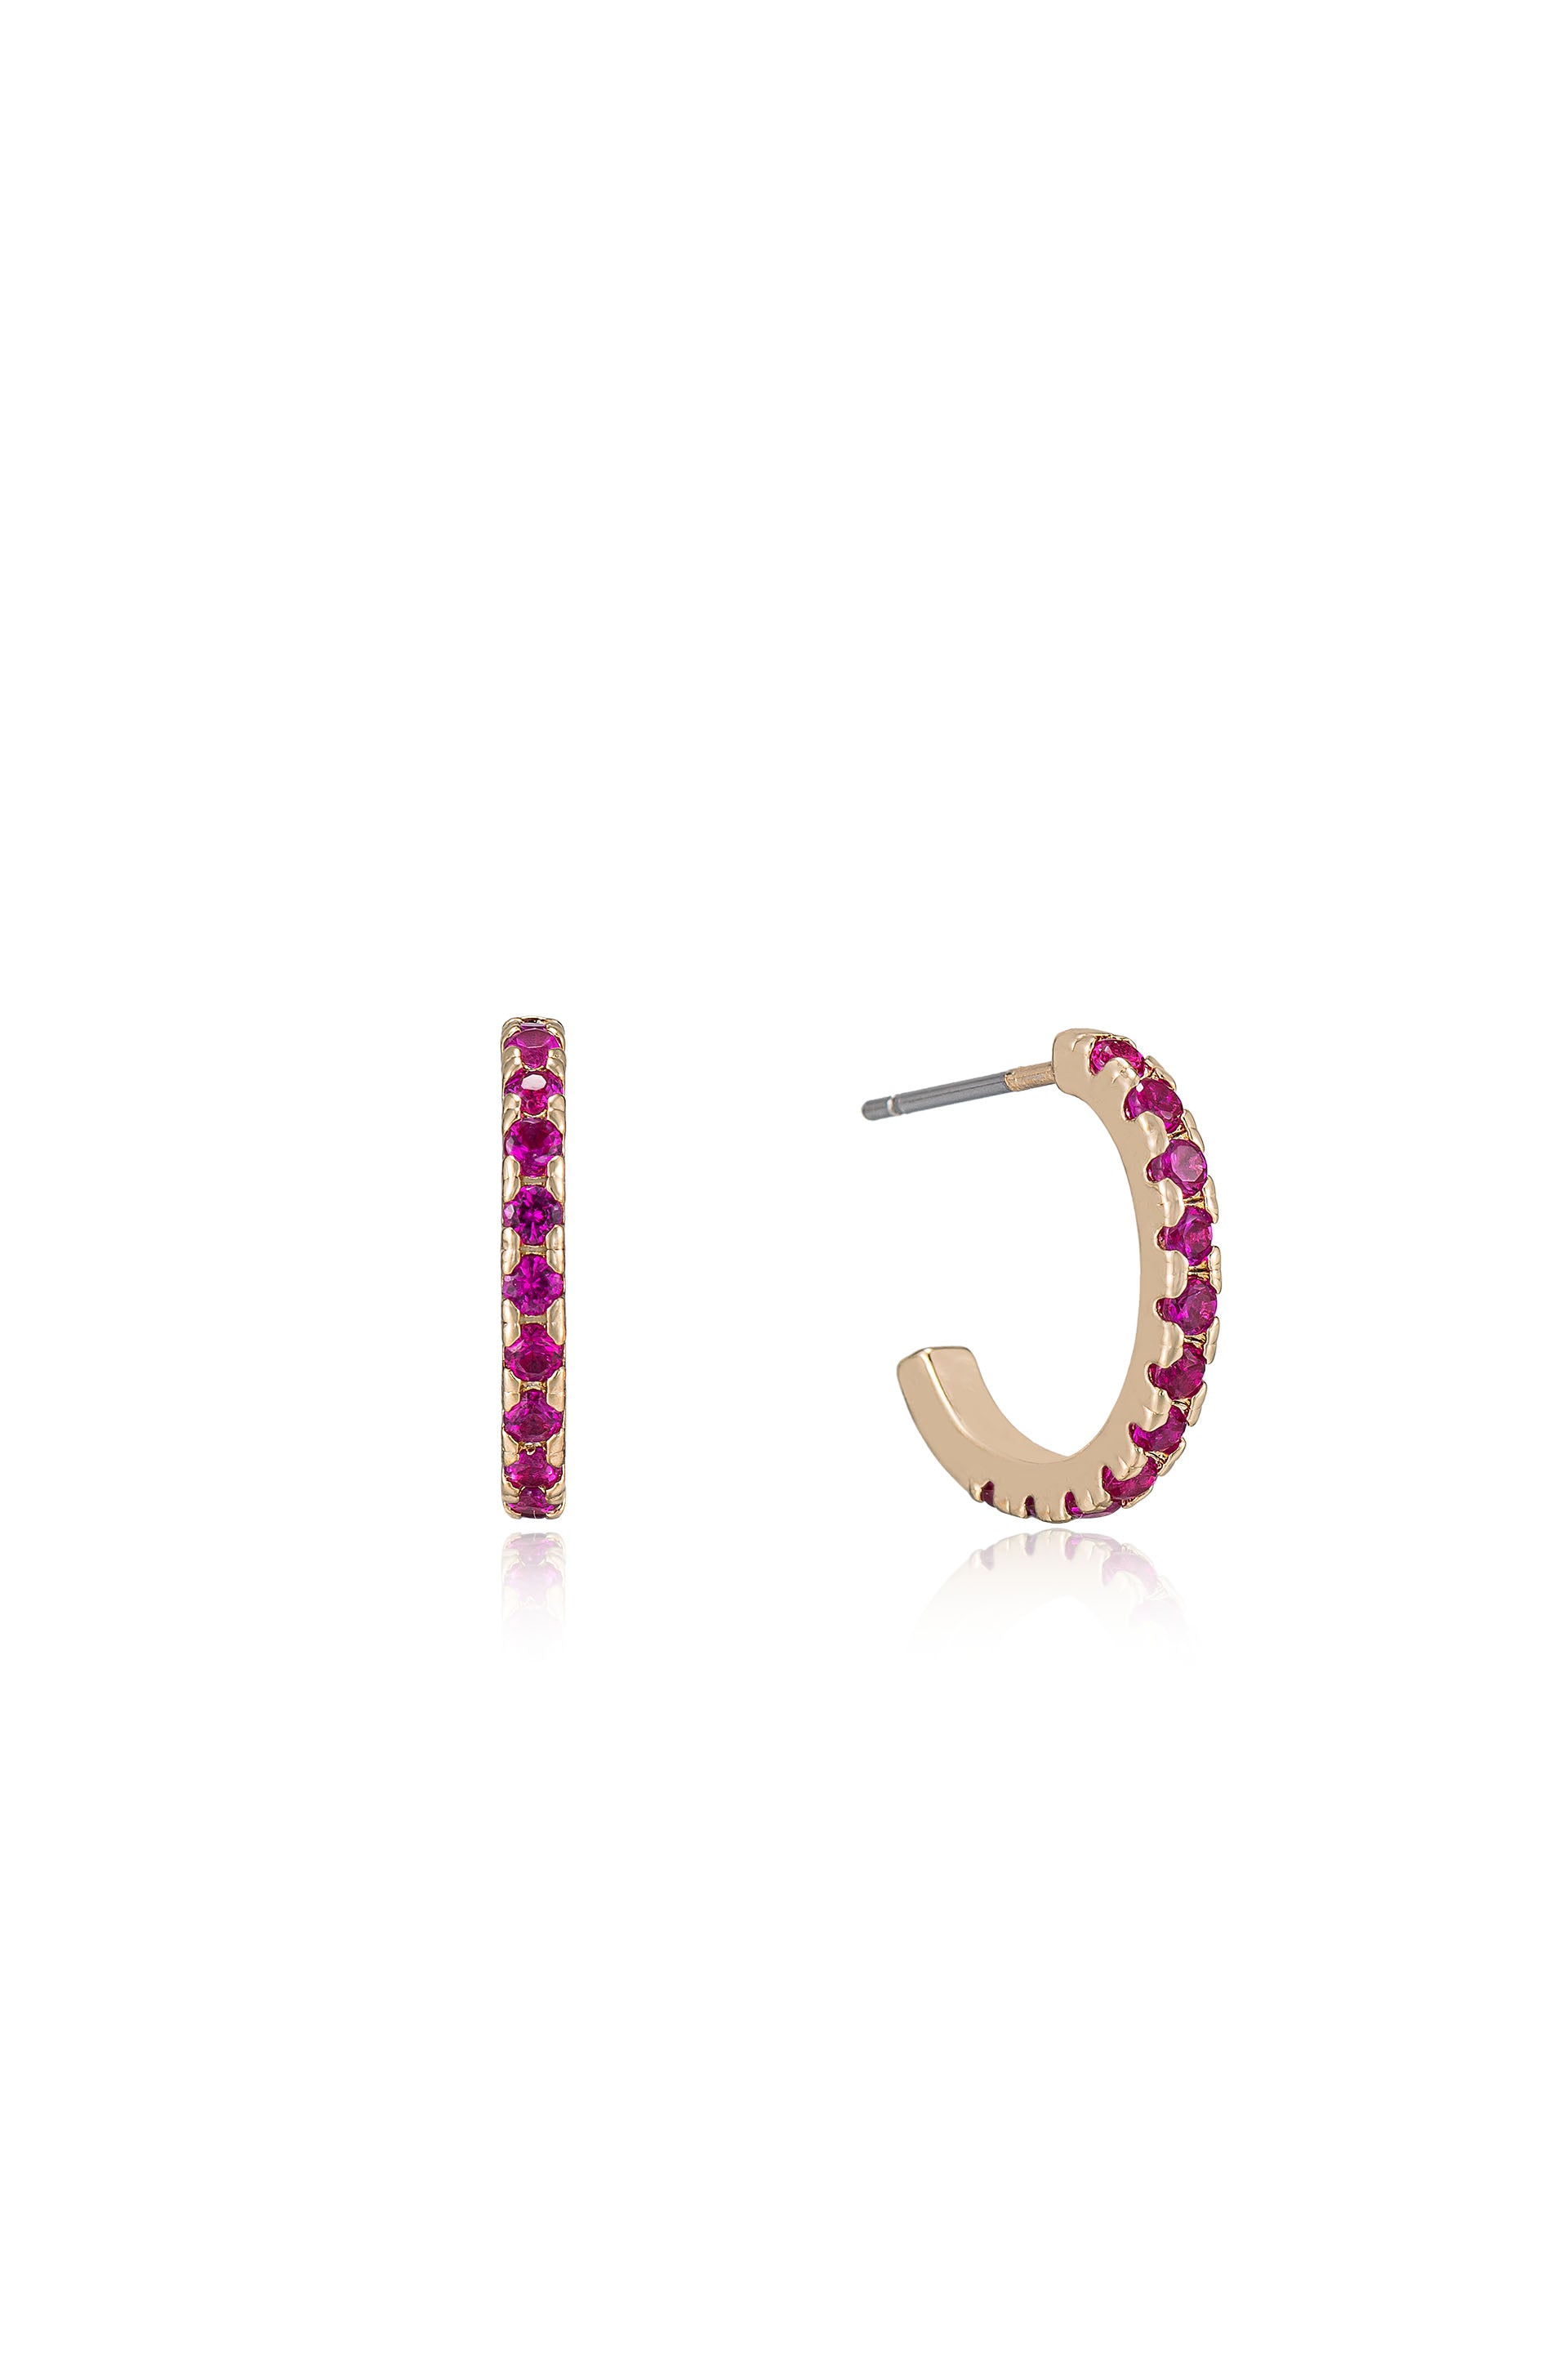 Colorful Crystal Huggie Earrings in ruby